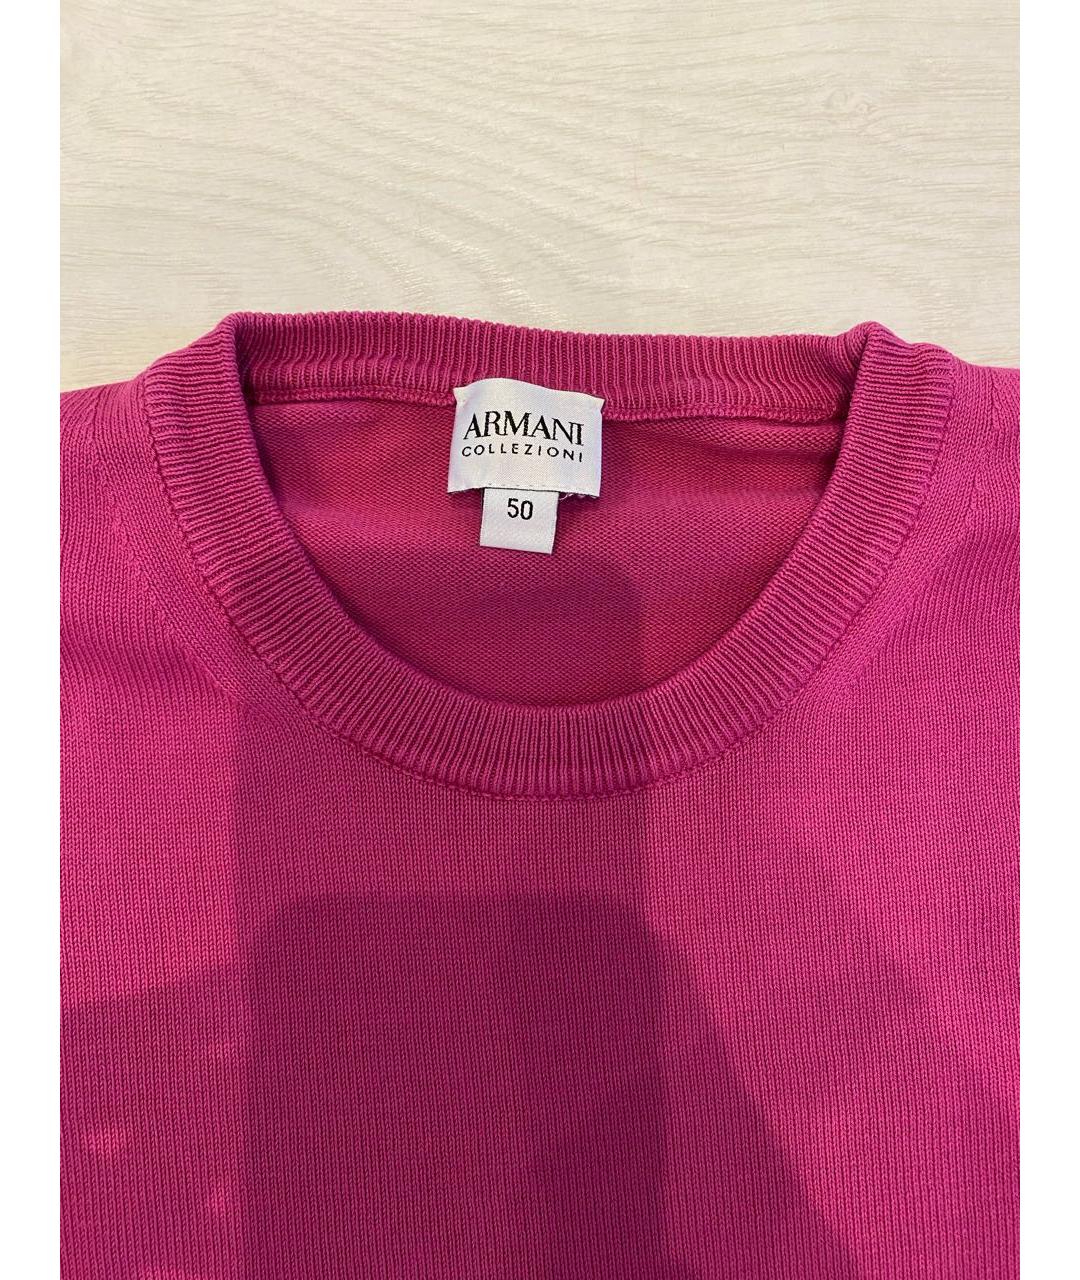 ARMANI COLLEZIONI Розовый хлопковый джемпер / свитер, фото 5